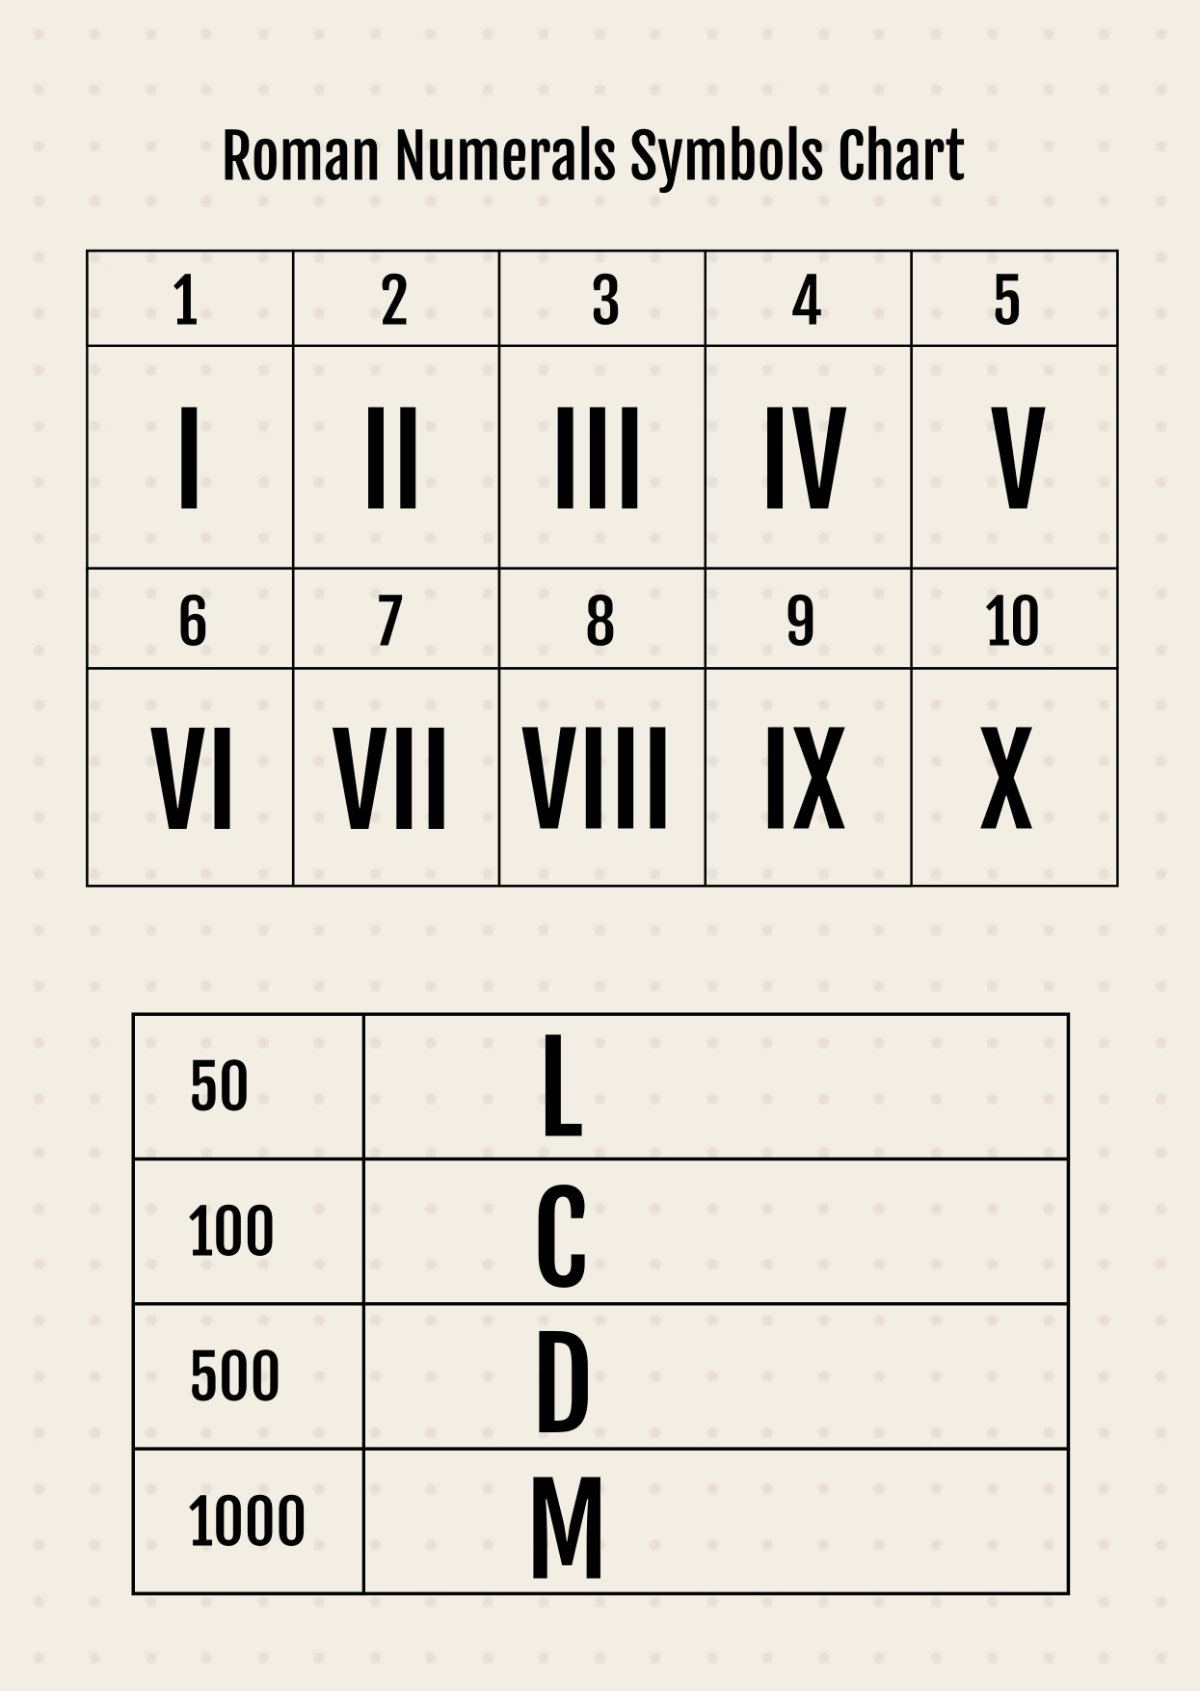 Roman Numerals Symbols Chart